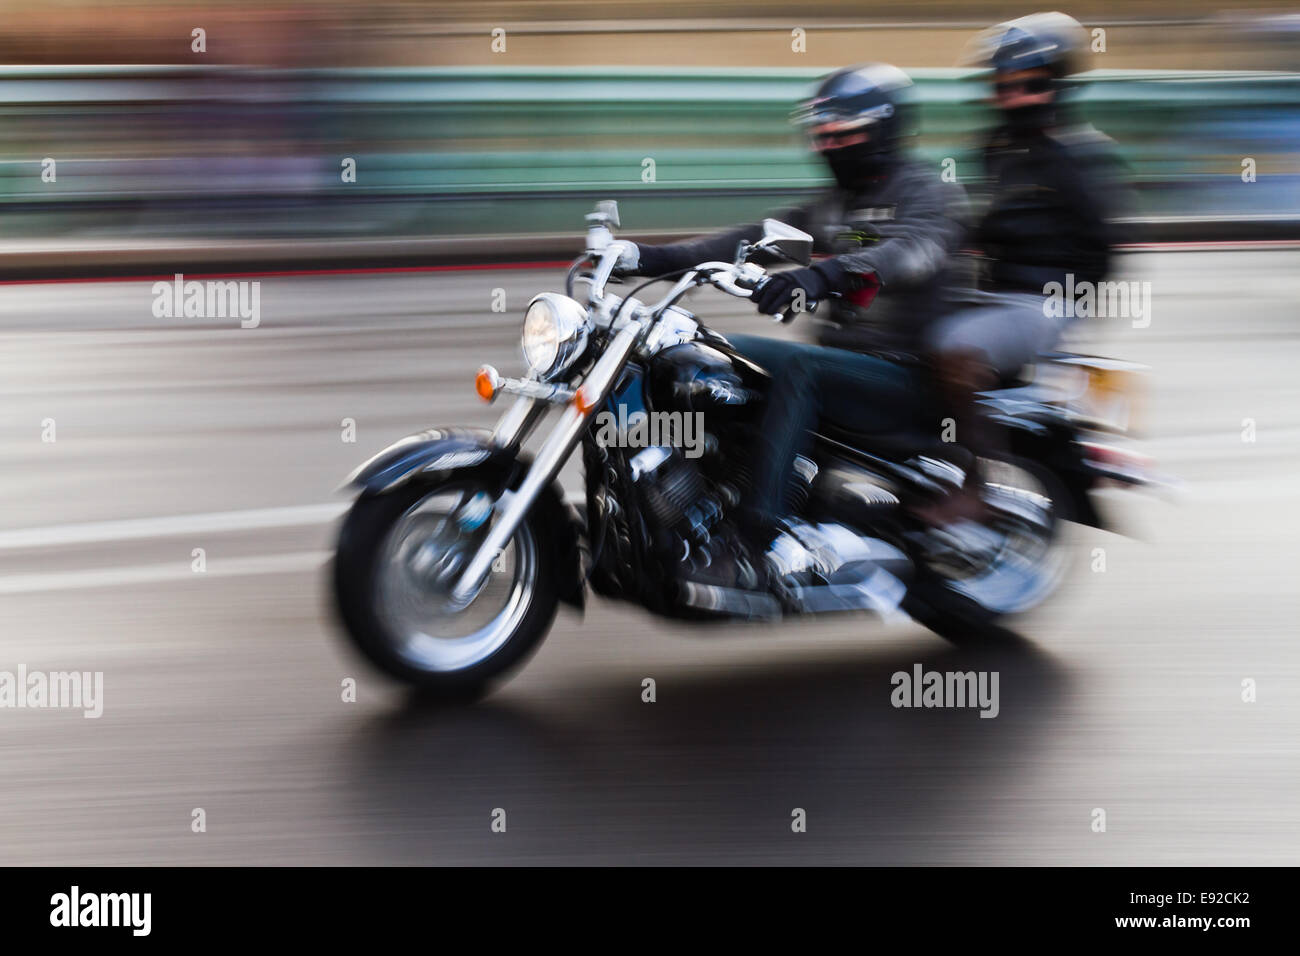 Moto dans le motion blur Banque D'Images